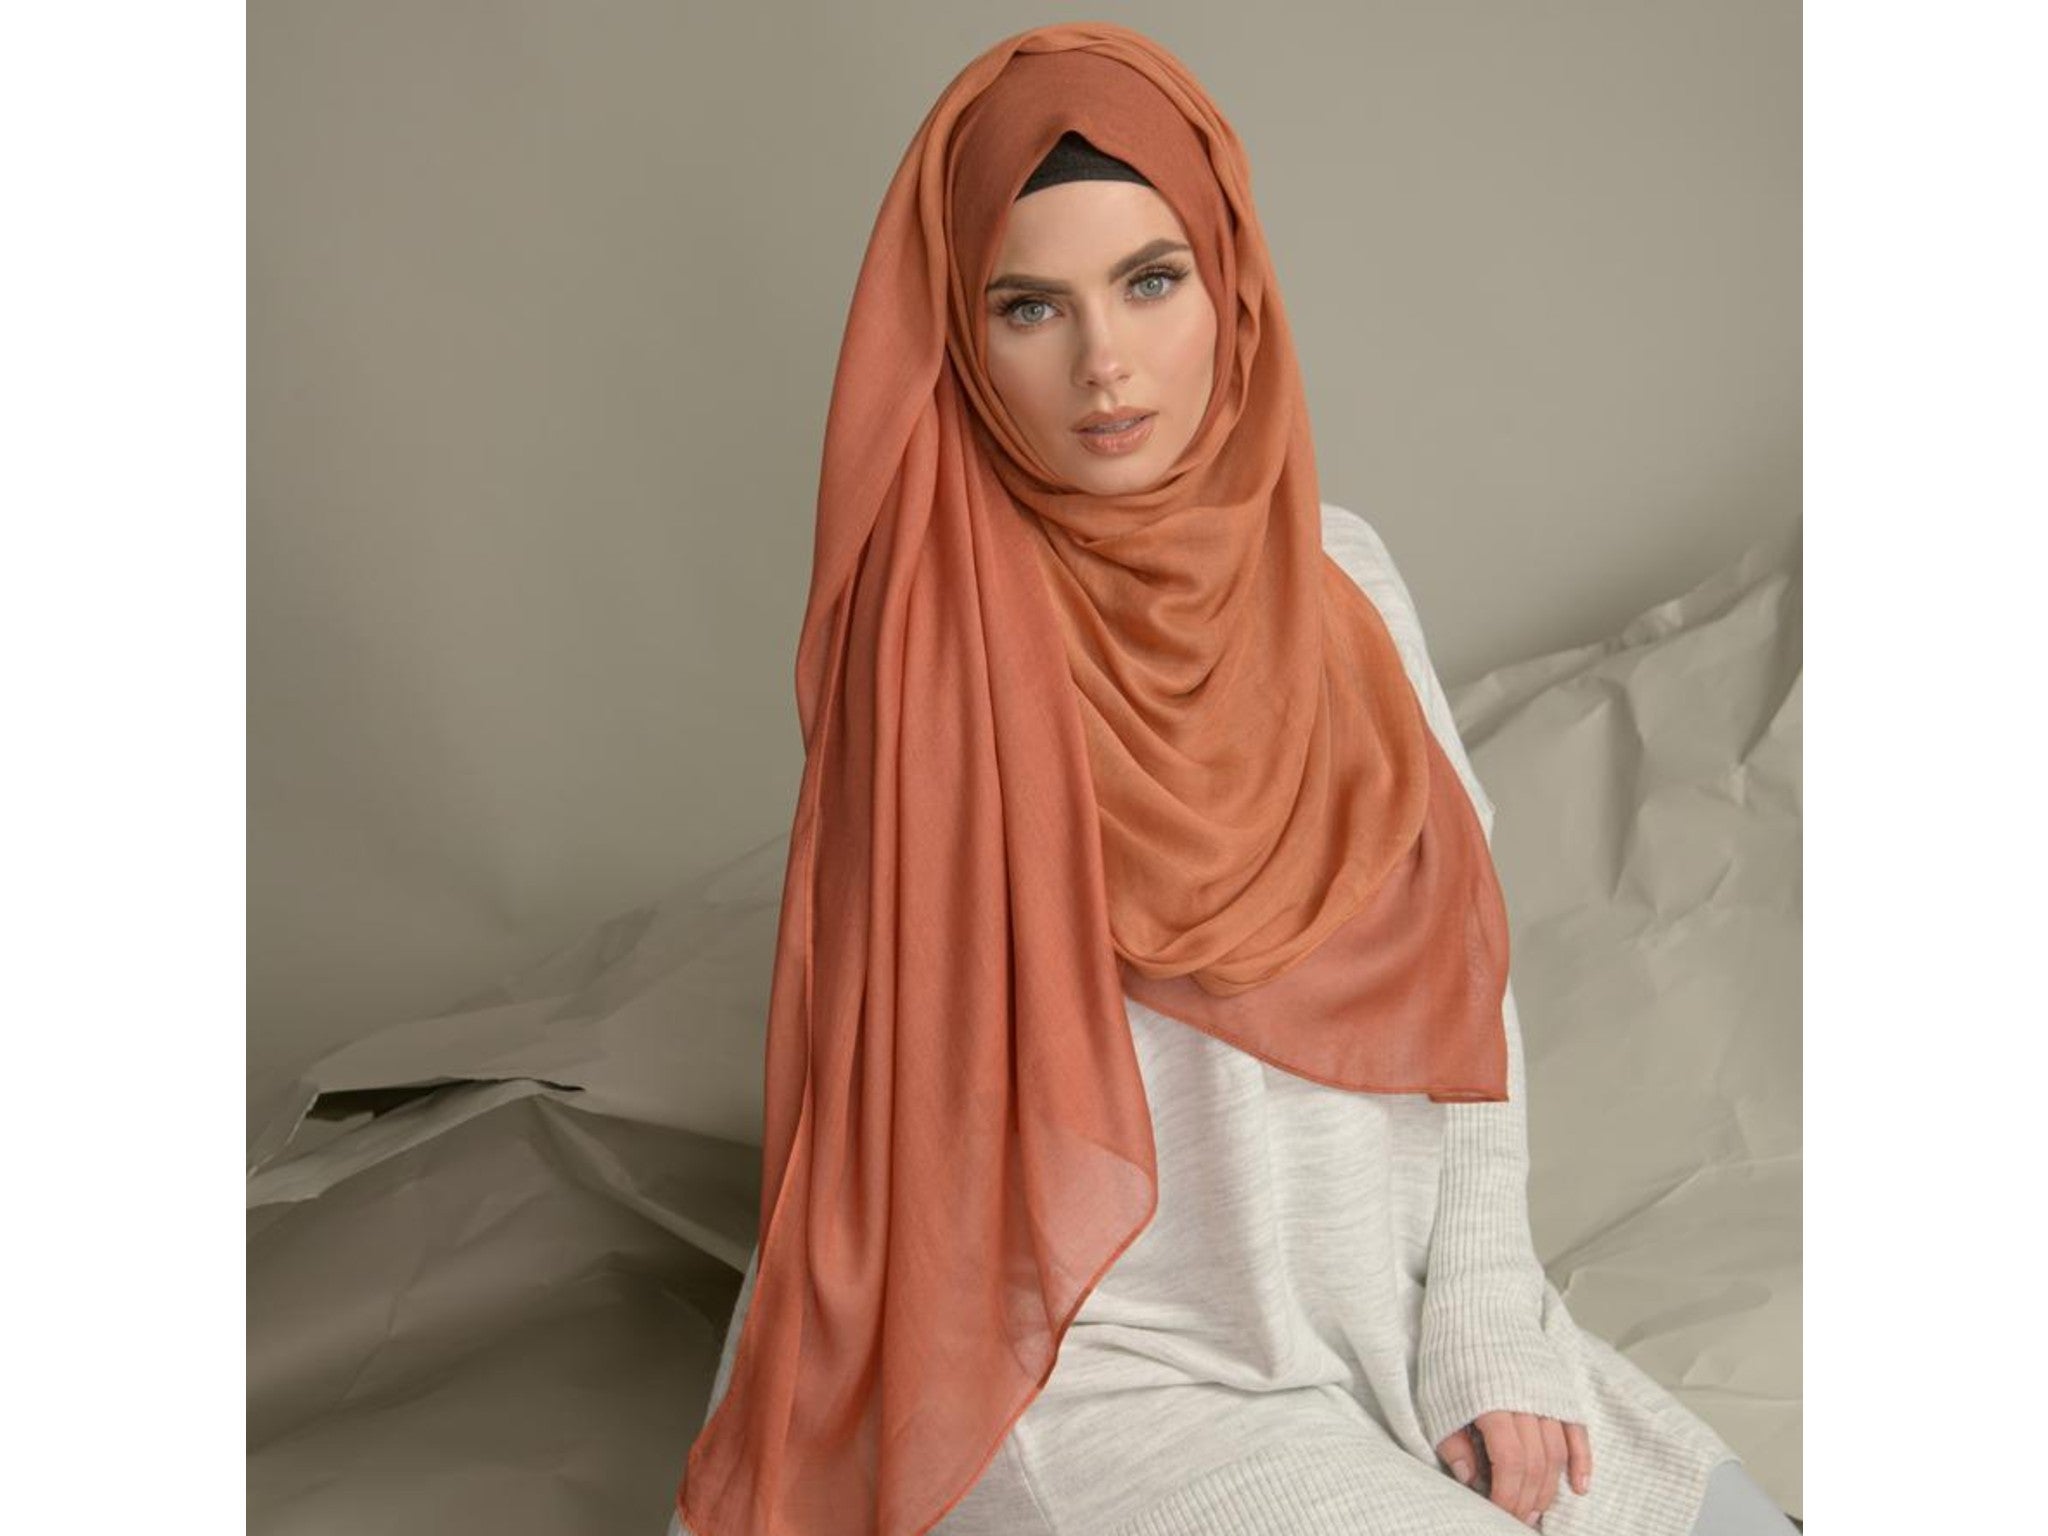 _Awra ombre mika modal hijab indybest.jpeg